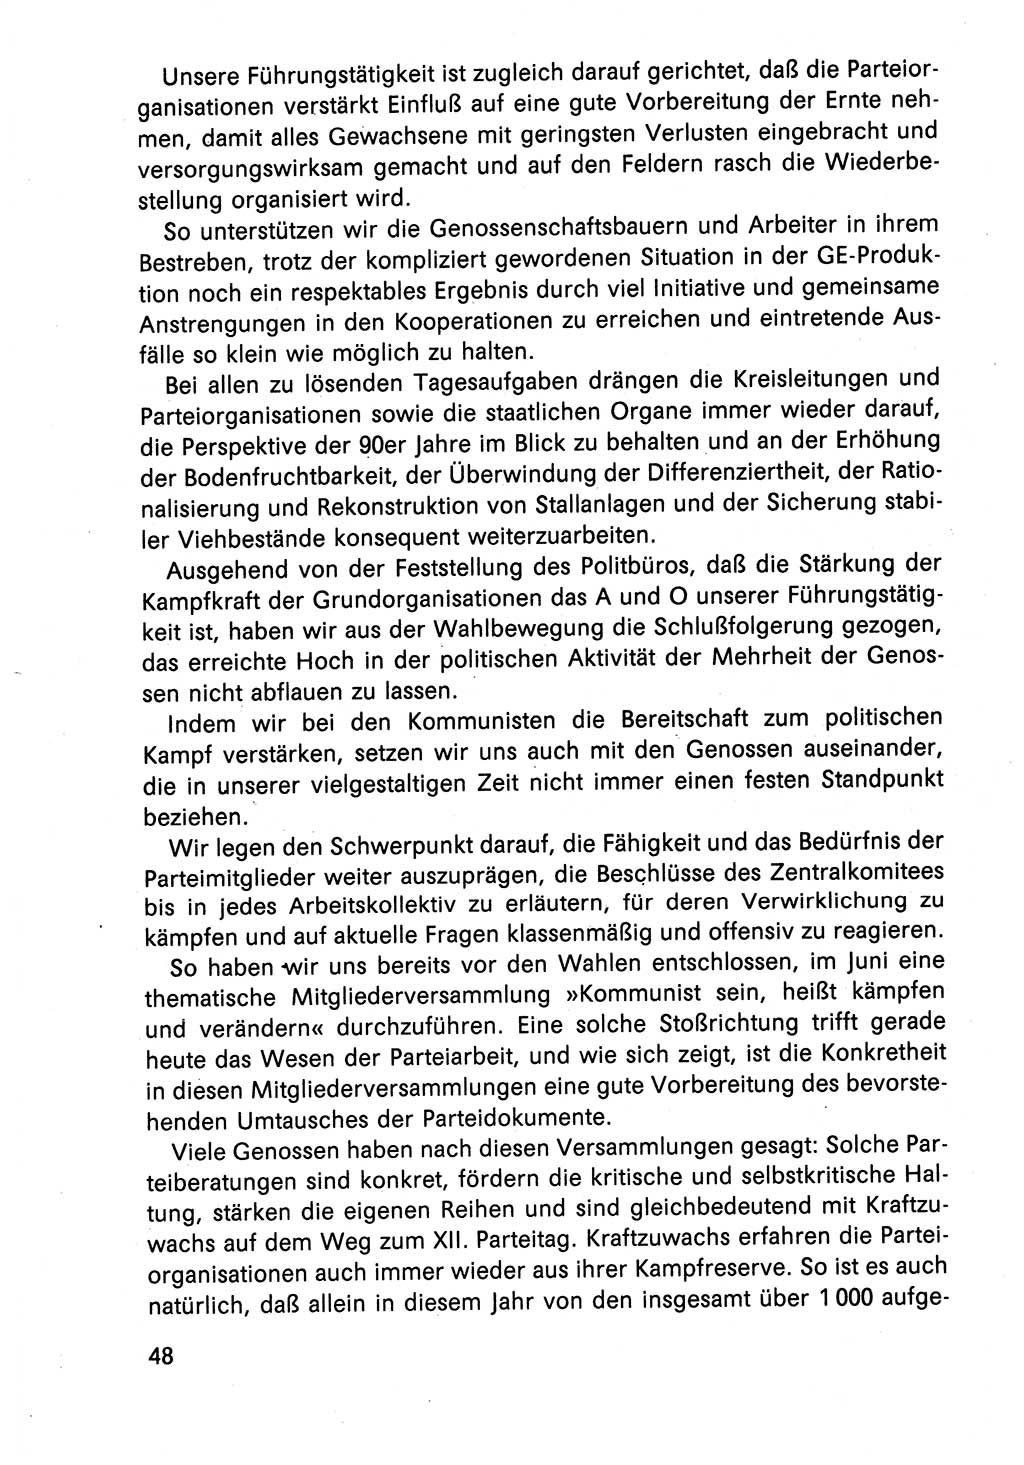 Diskussionsreden, 8. Tagung des ZK (Zentralkomitee) der SED (Sozialistische Einheitspartei Deutschlands) [Deutsche Demokratische Republik (DDR)] 1989, Seite 48 (Disk.-Red. 8. Tg. ZK SED DDR 1989, S. 48)